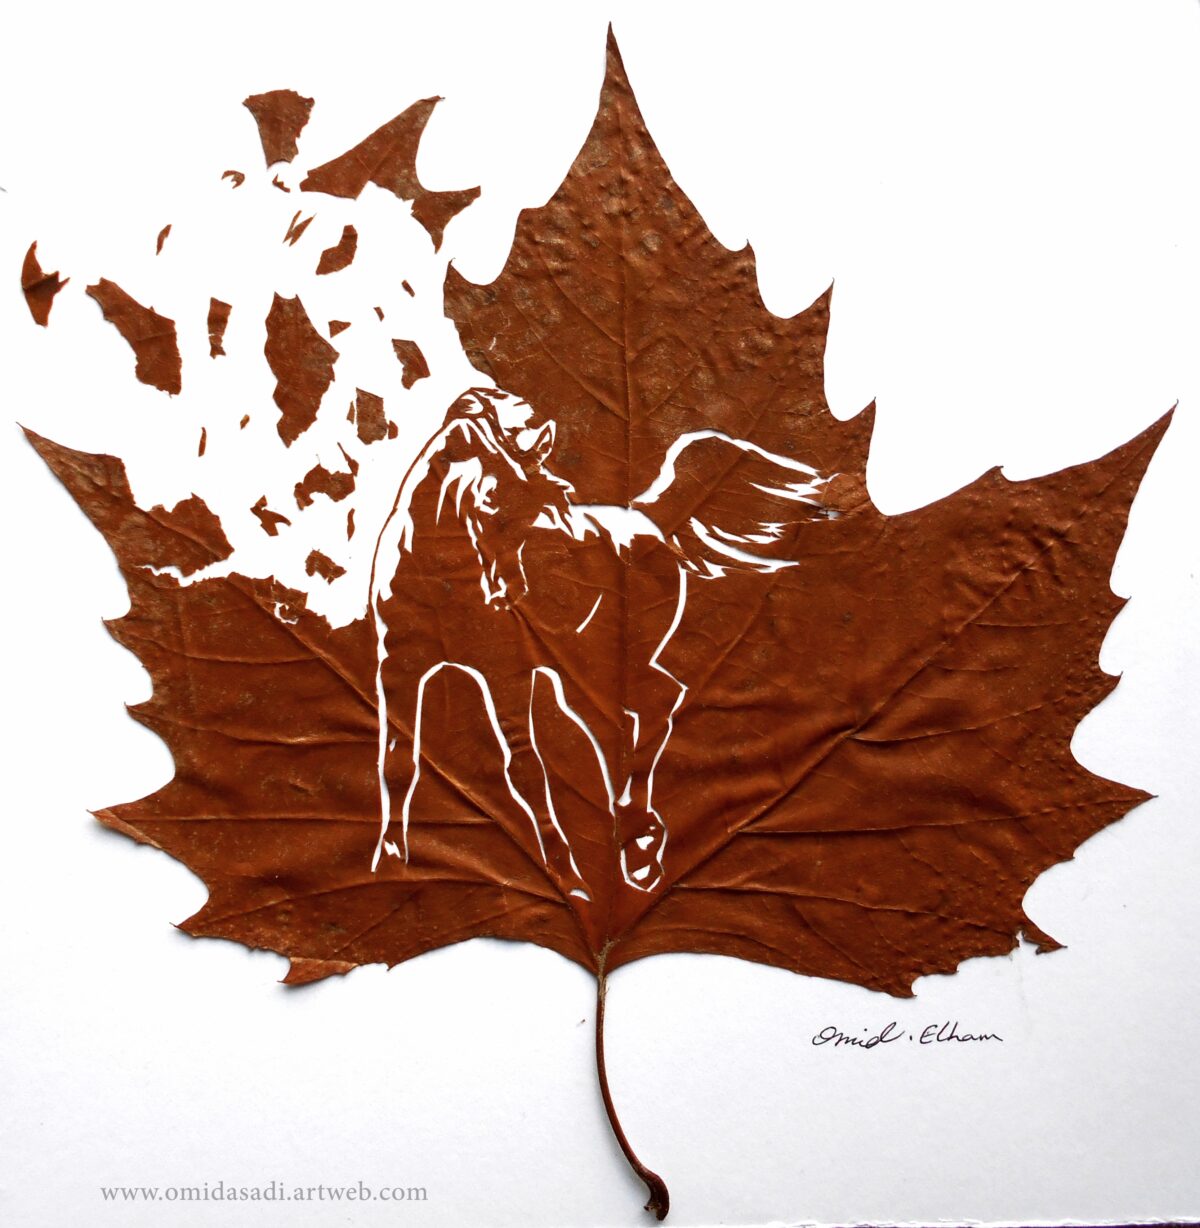 The Extraordinary Leaf Art Of Omid Asadi 7